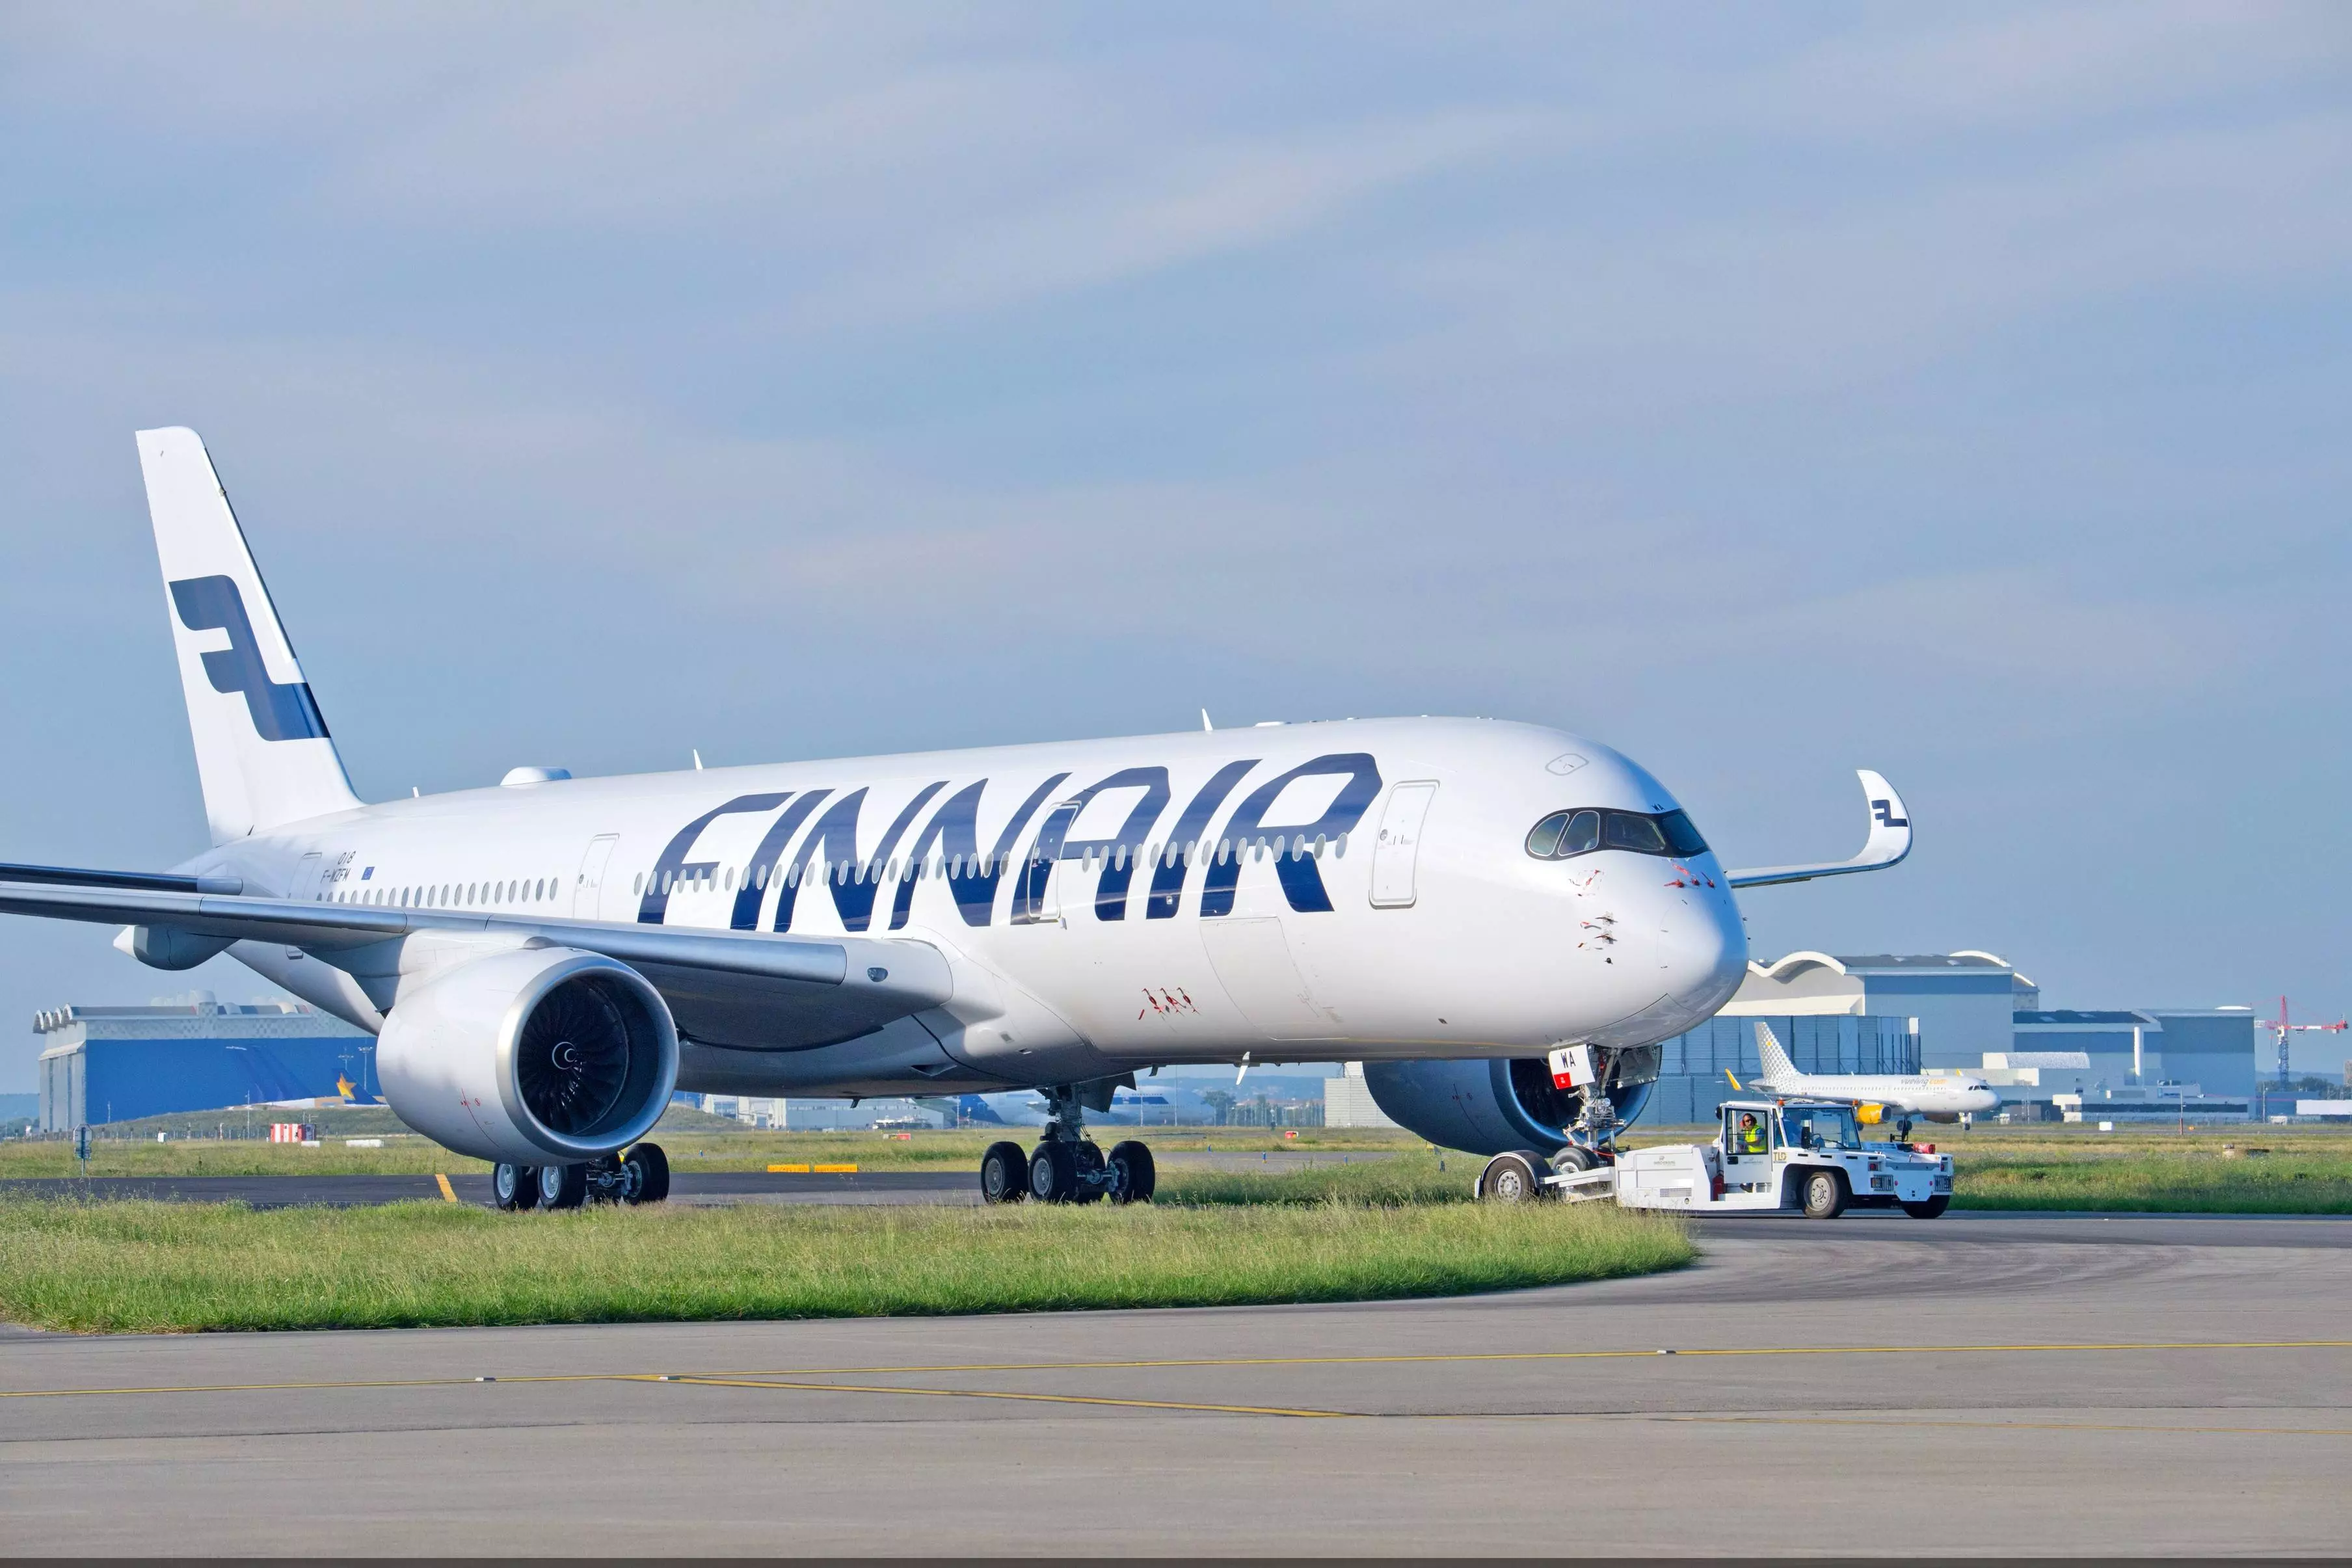 Государственный авиаперевозчик финляндии finnair (финские авиалинии)